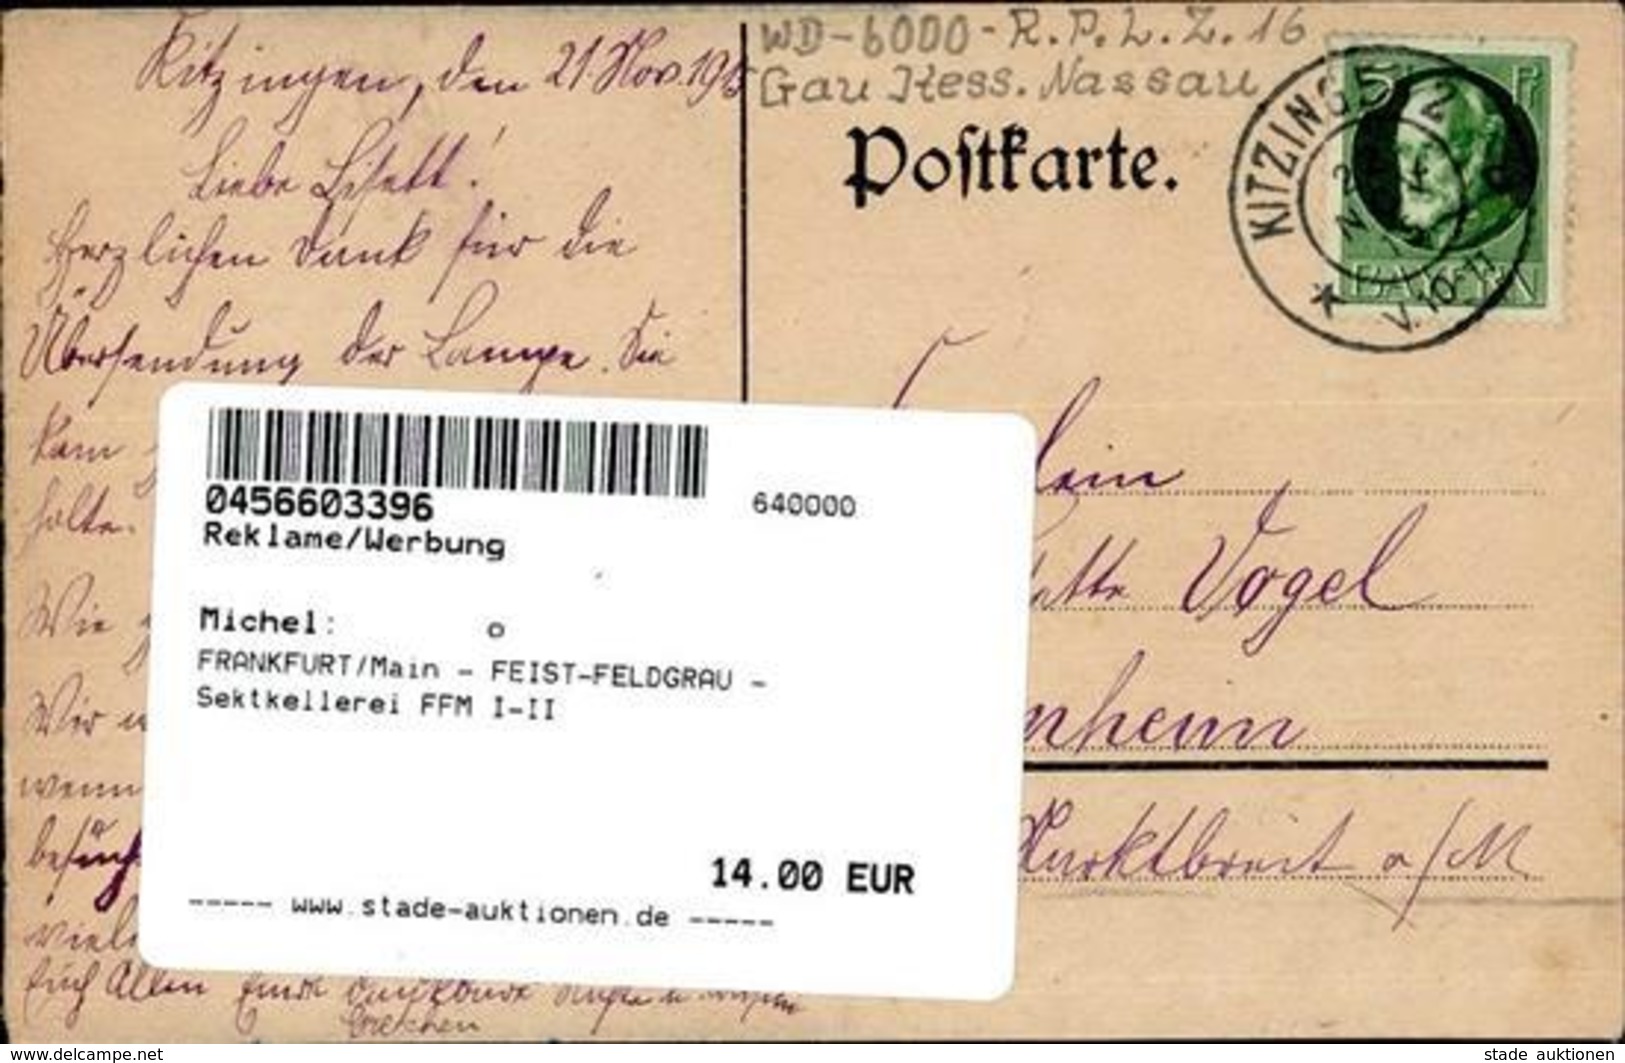 FRANKFURT/Main - FEIST-FELDGRAU - Sektkellerei FFM I-II - Werbepostkarten